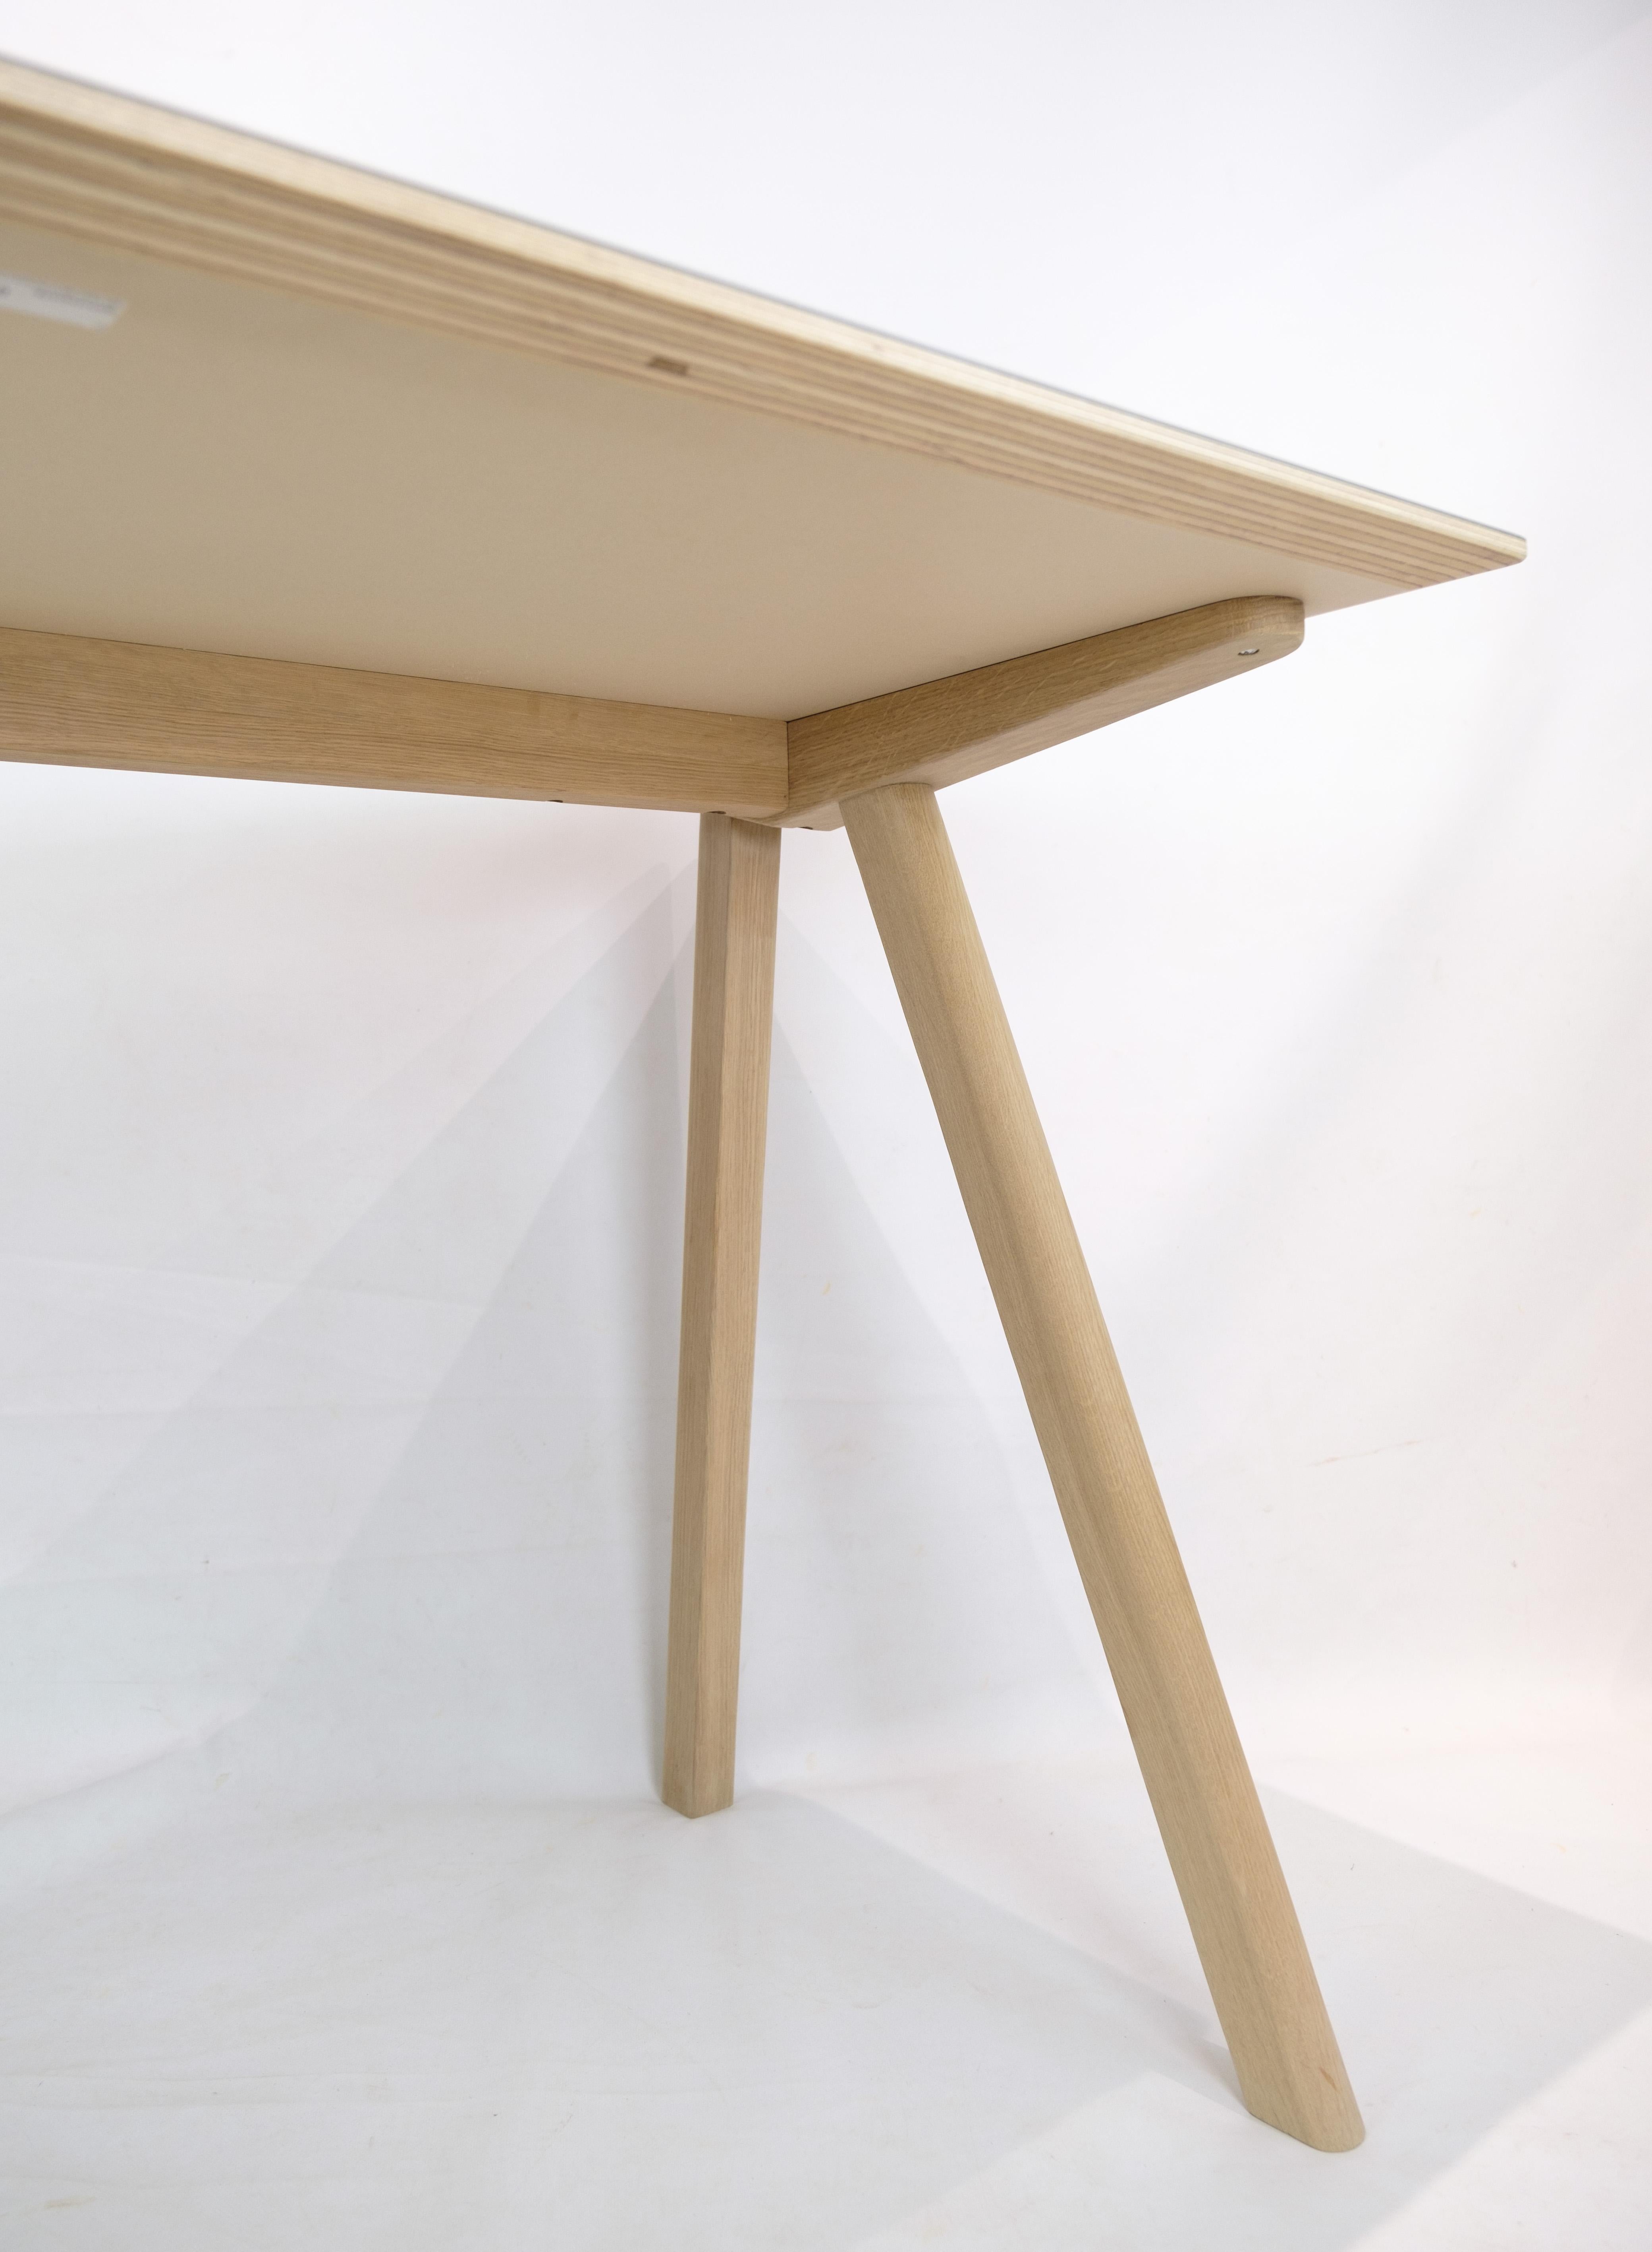 Oak Desk model Copenhague CPH90 in oak designed by Ronan & Erwan Bouroullec, 1990s For Sale